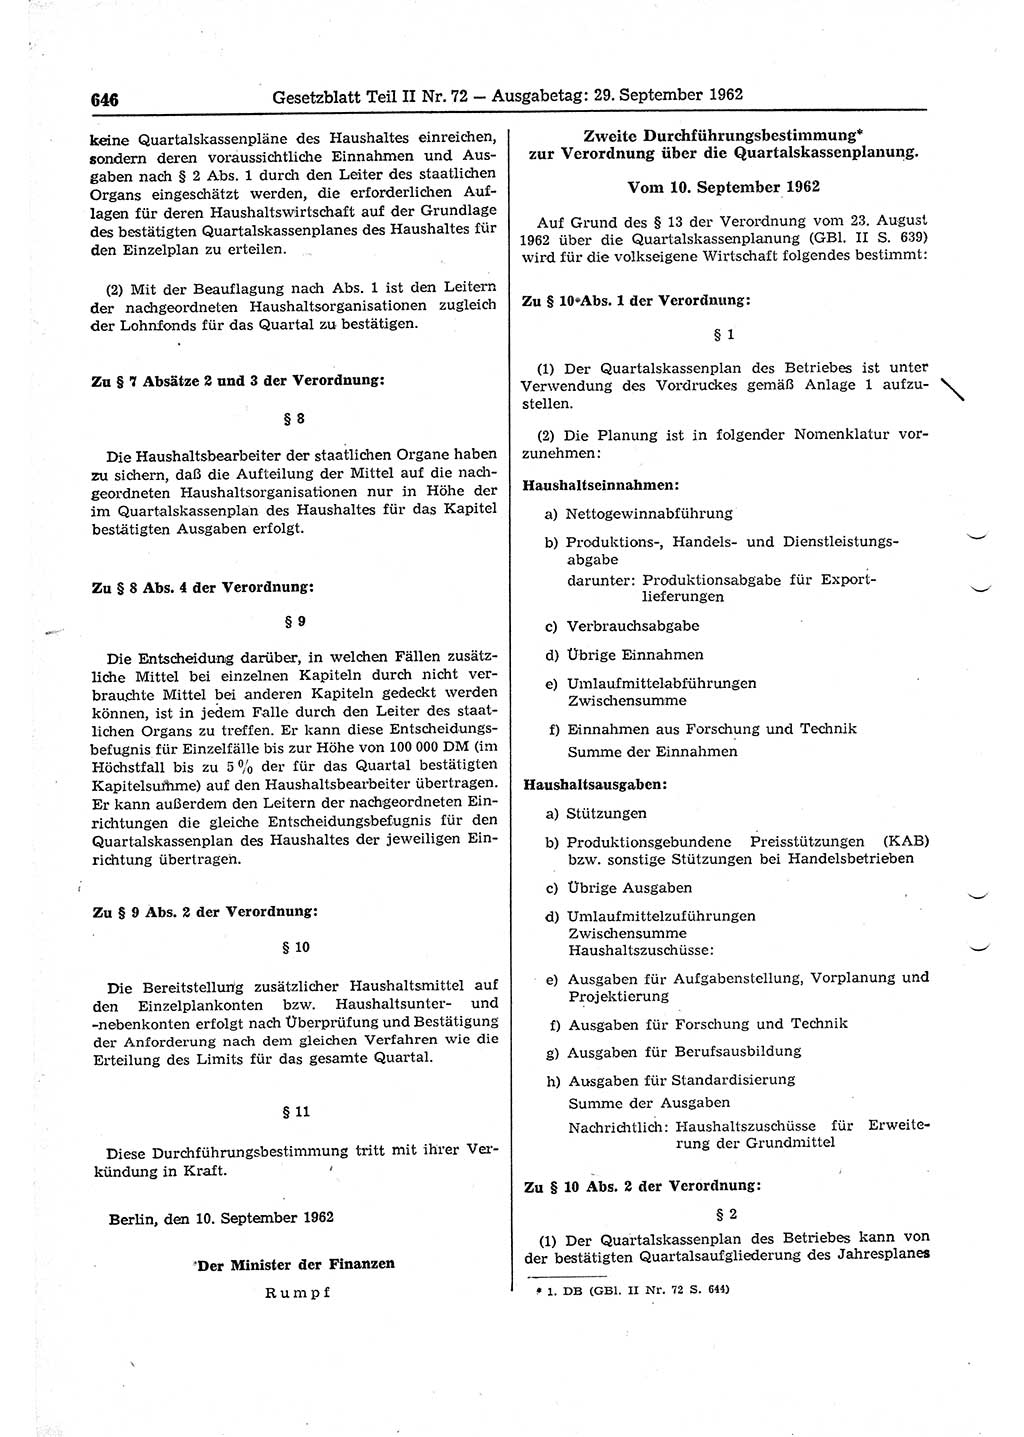 Gesetzblatt (GBl.) der Deutschen Demokratischen Republik (DDR) Teil ⅠⅠ 1962, Seite 646 (GBl. DDR ⅠⅠ 1962, S. 646)